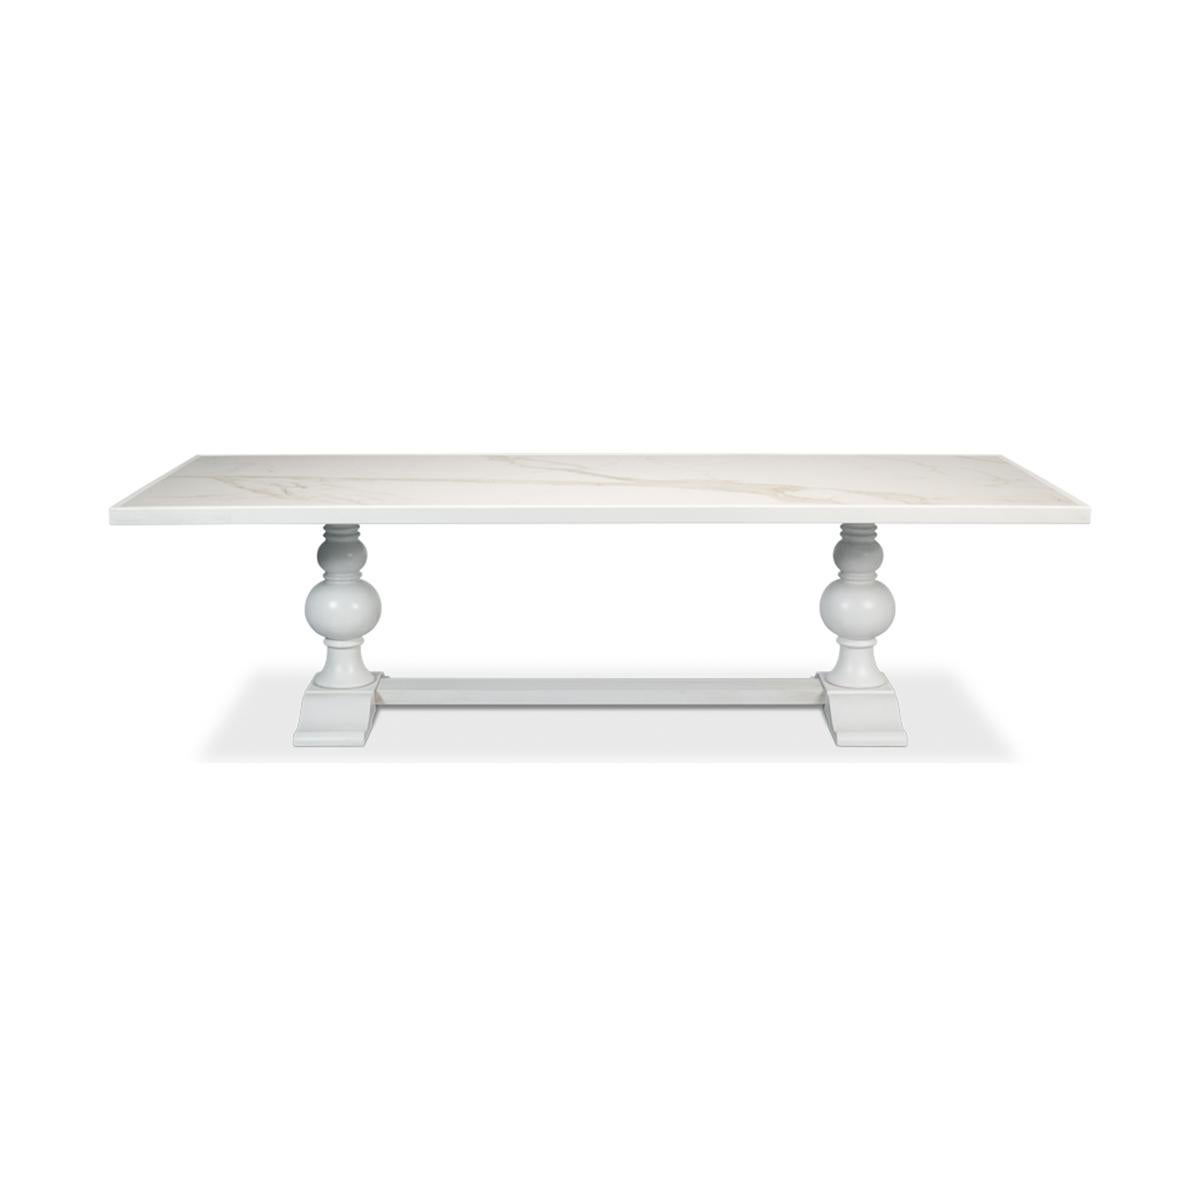 Table de salle à manger avec un plateau incrusté de porcelaine Calacatta, sur une base à double piédestal en forme de balustre tourné, avec une finition peinte à la main en blanc.

Dimensions : 108